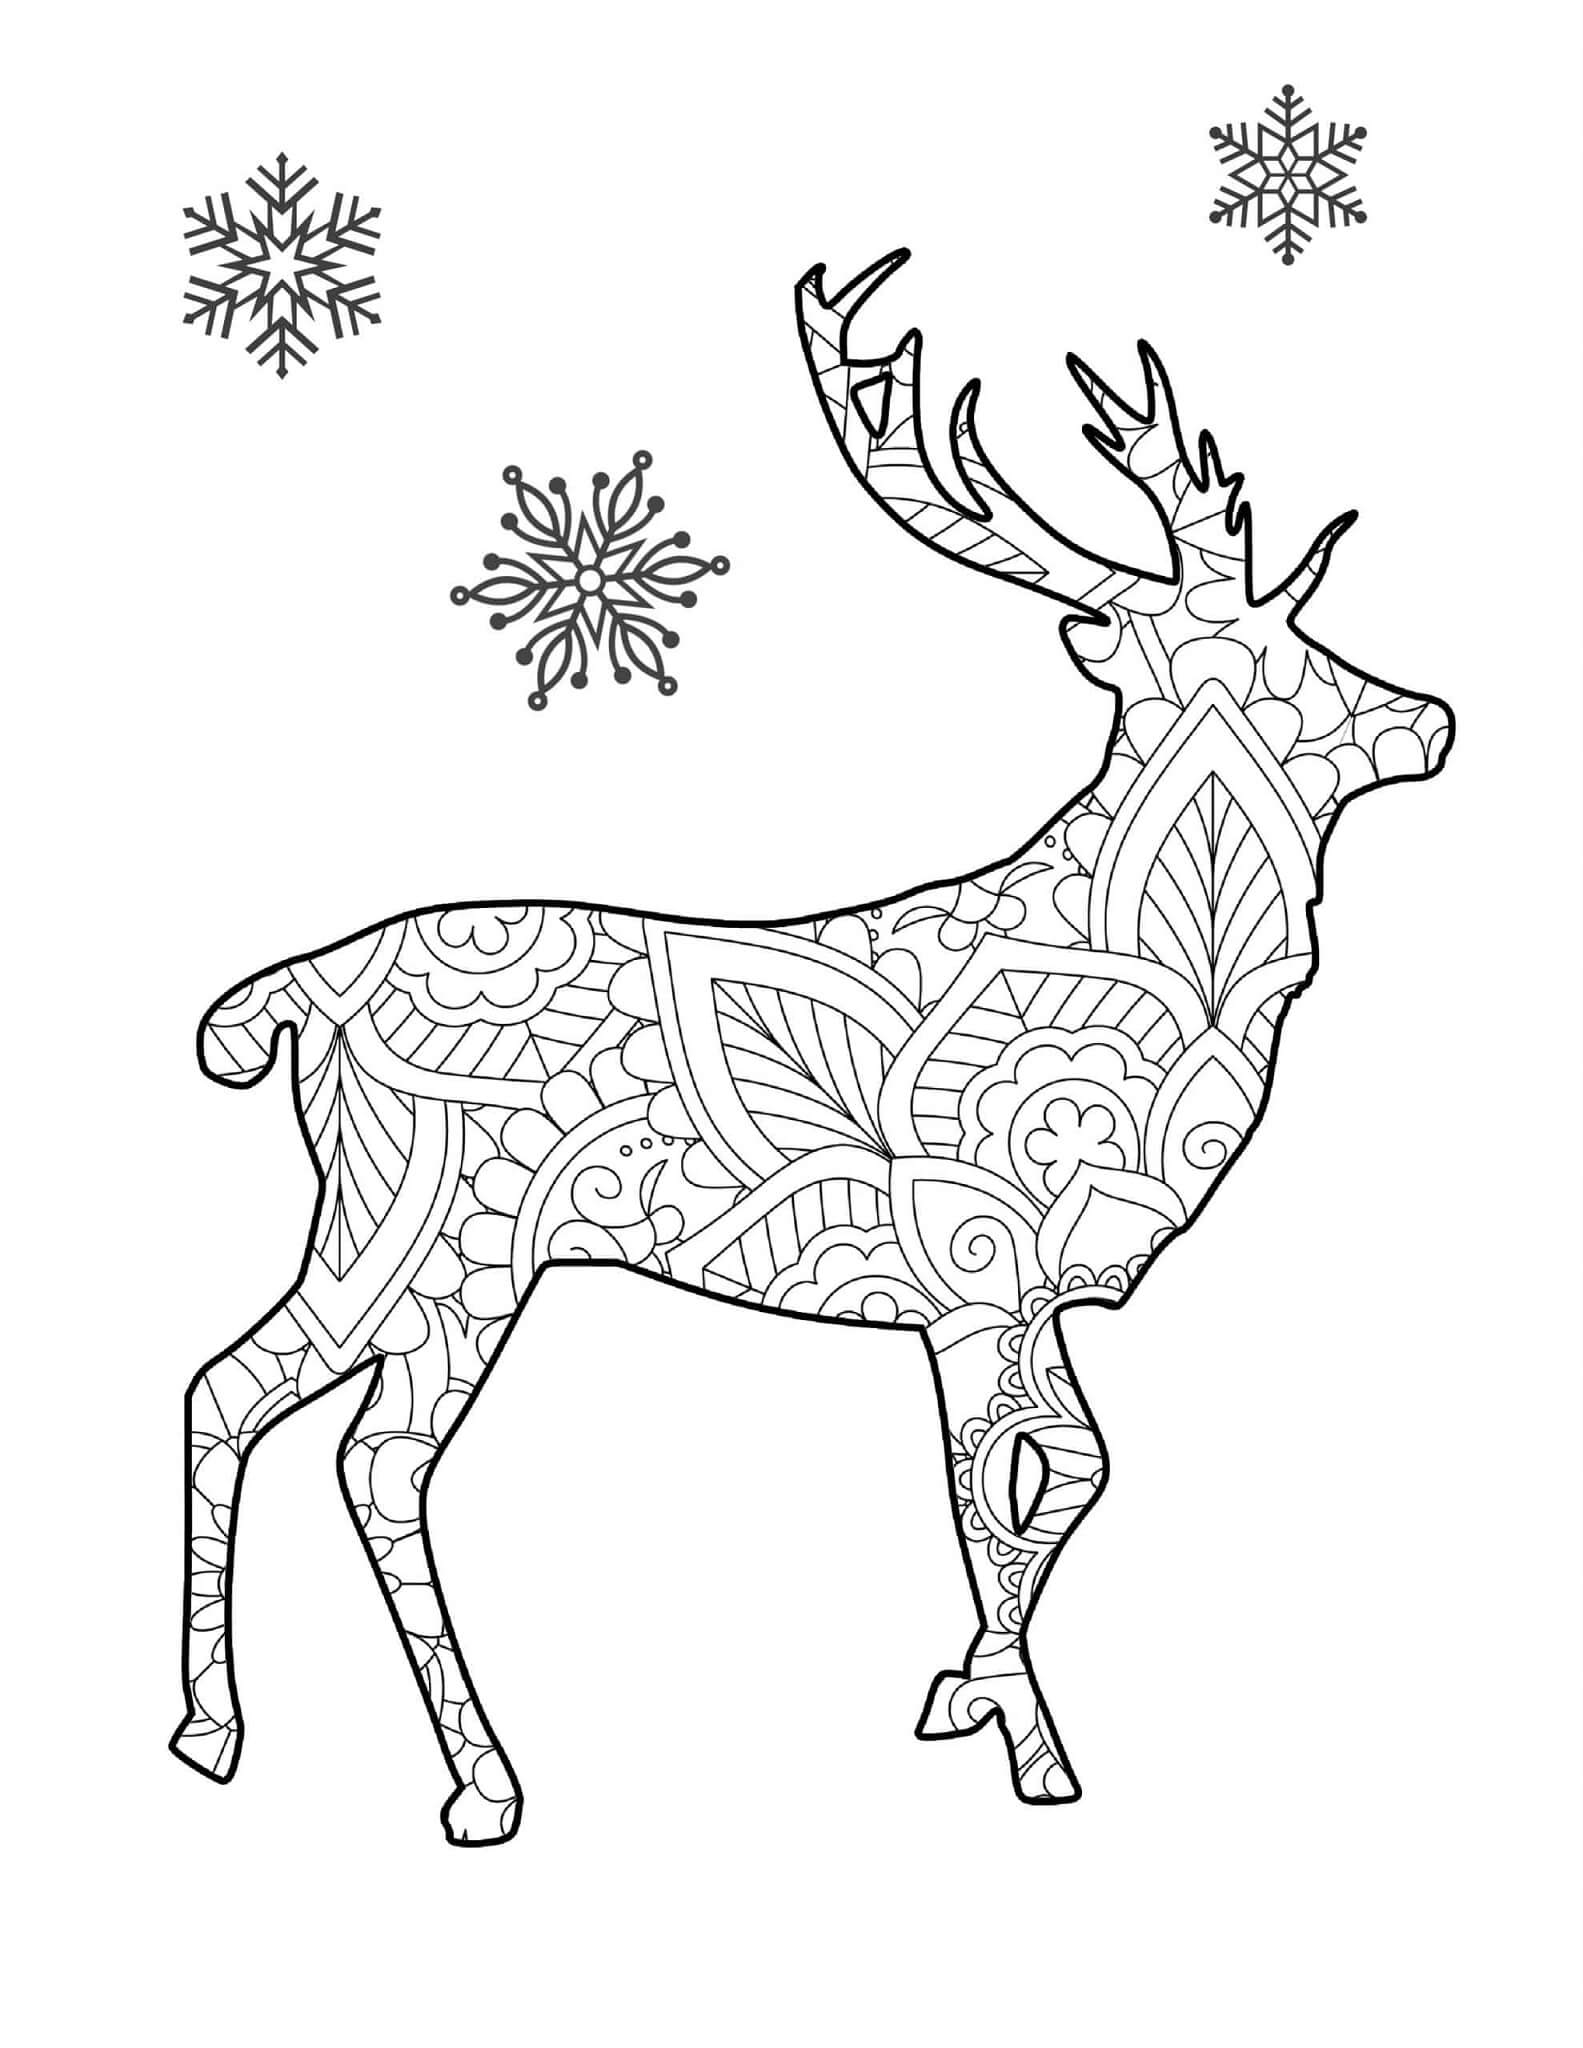 Mandala Deer Coloring Pages Mandalas